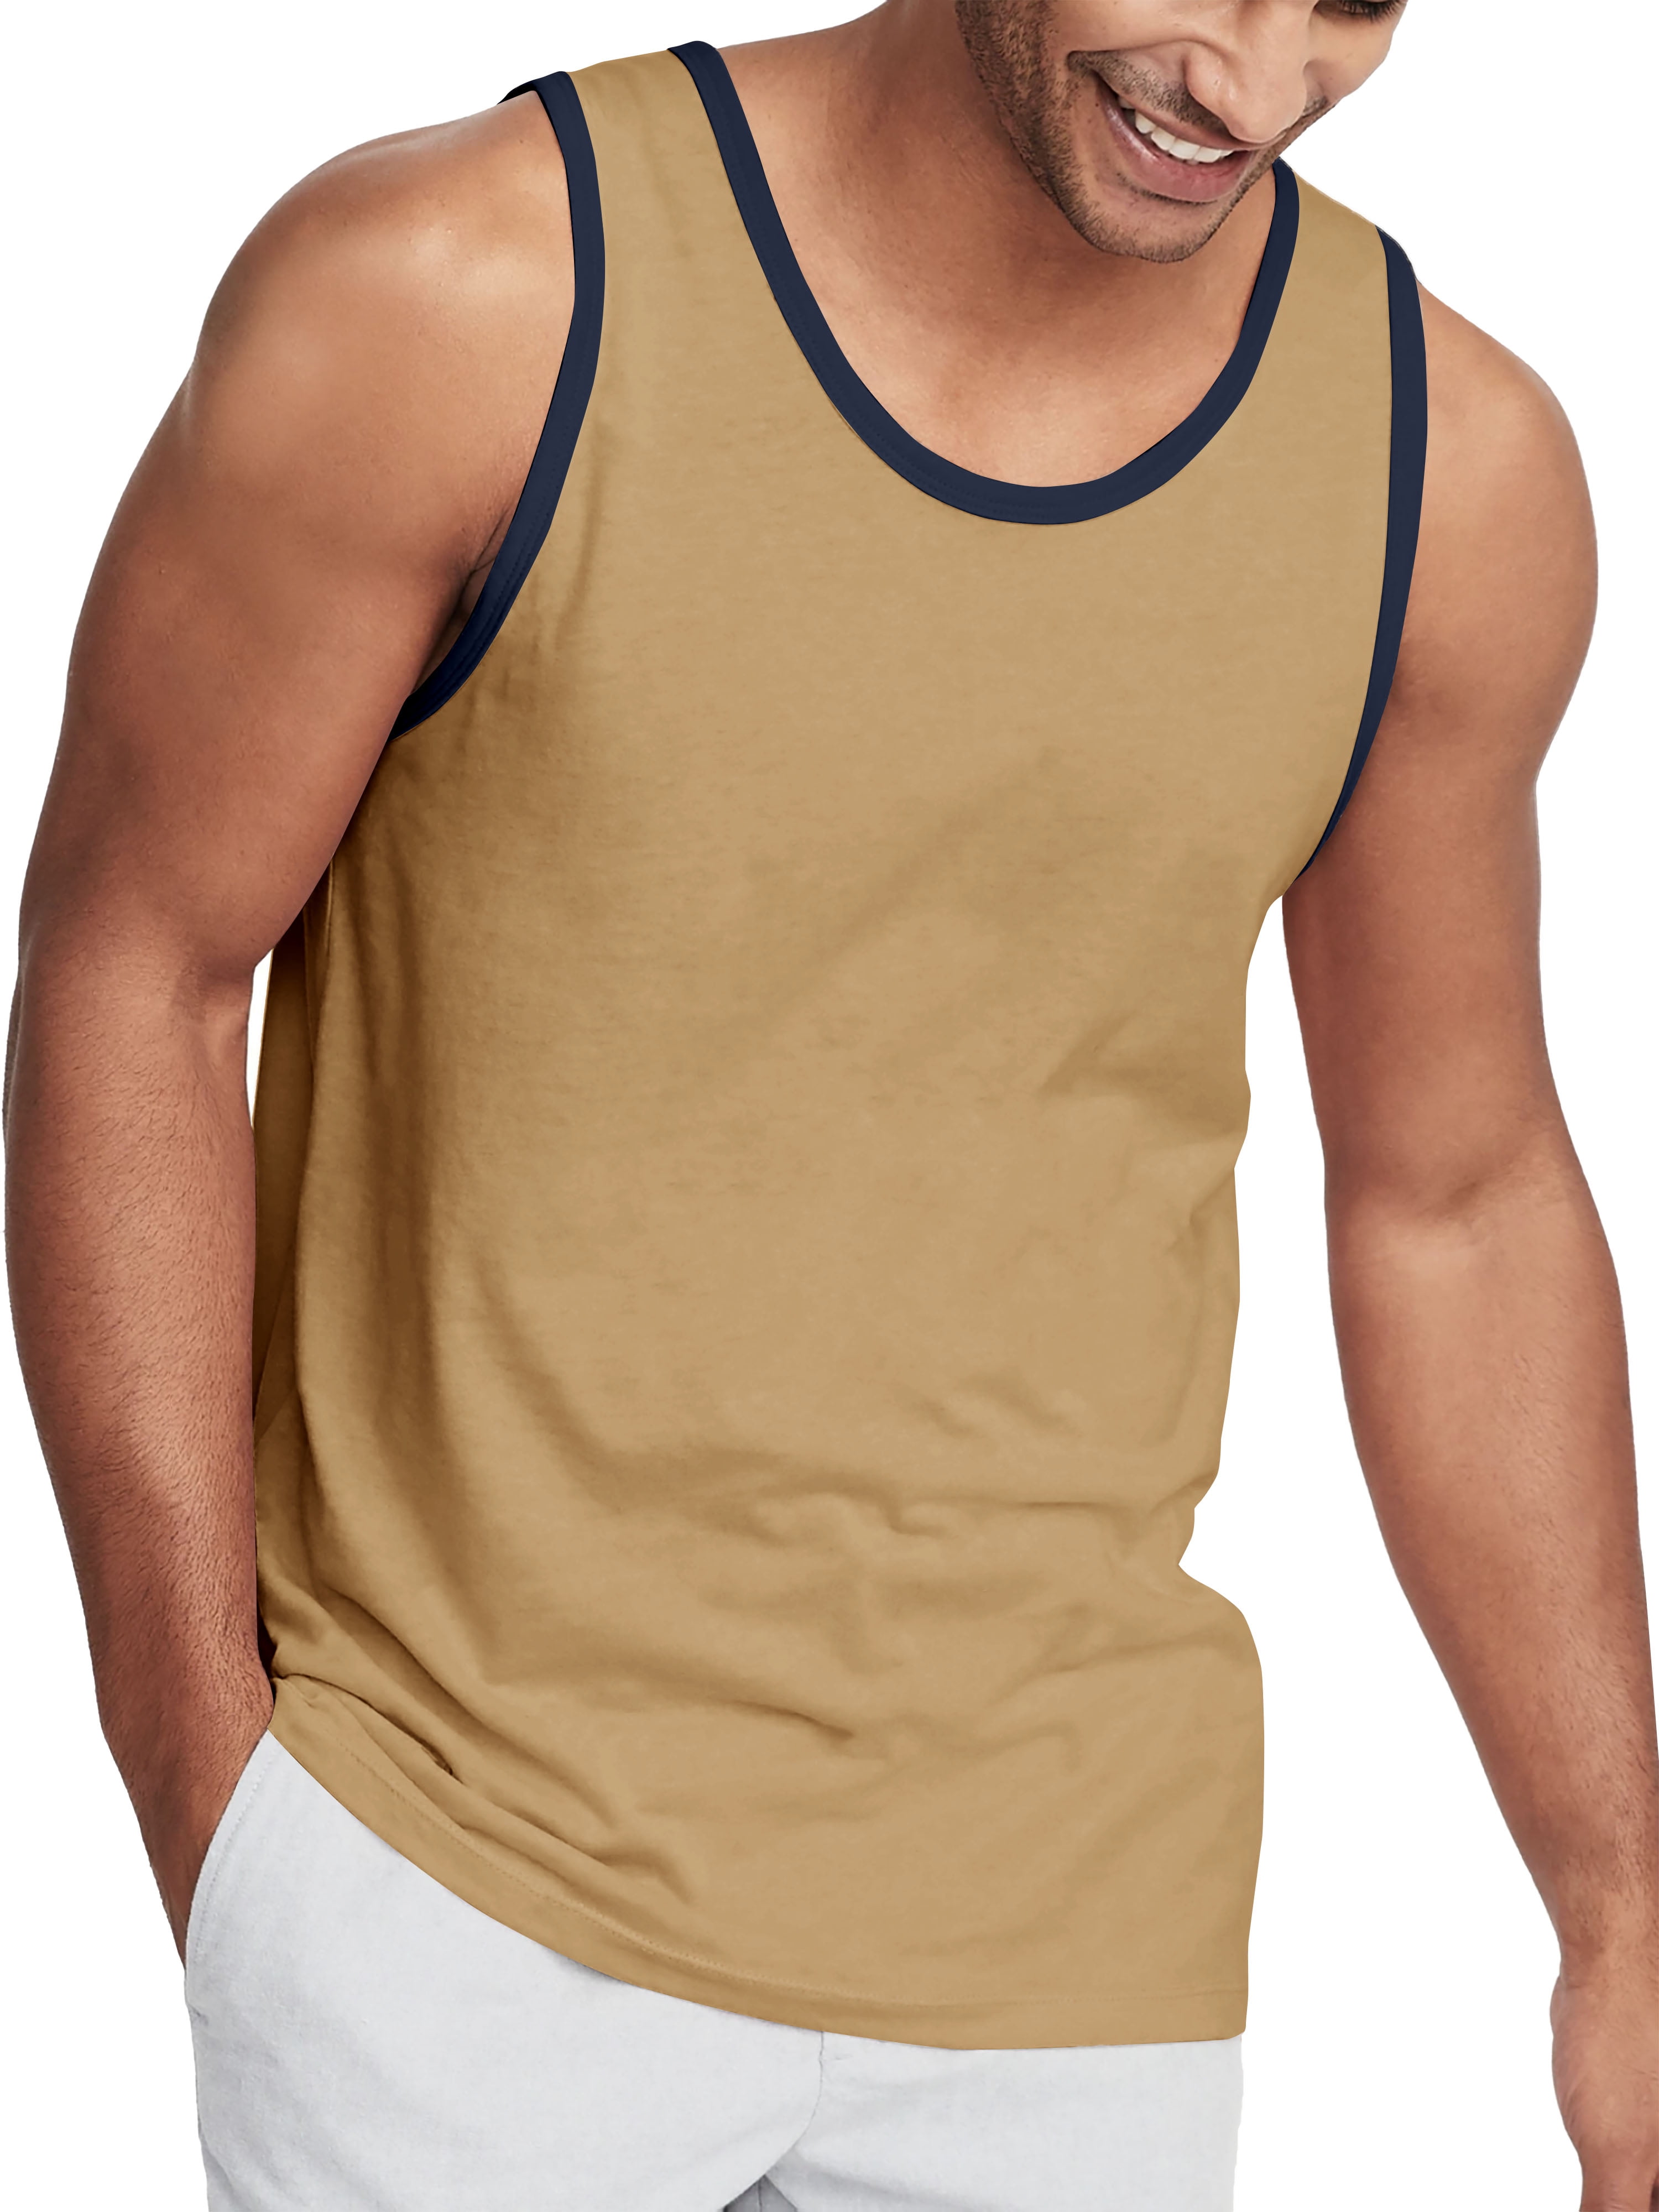 Men’s Casual Vest Under Garment T-Shirt Active Gym Wear